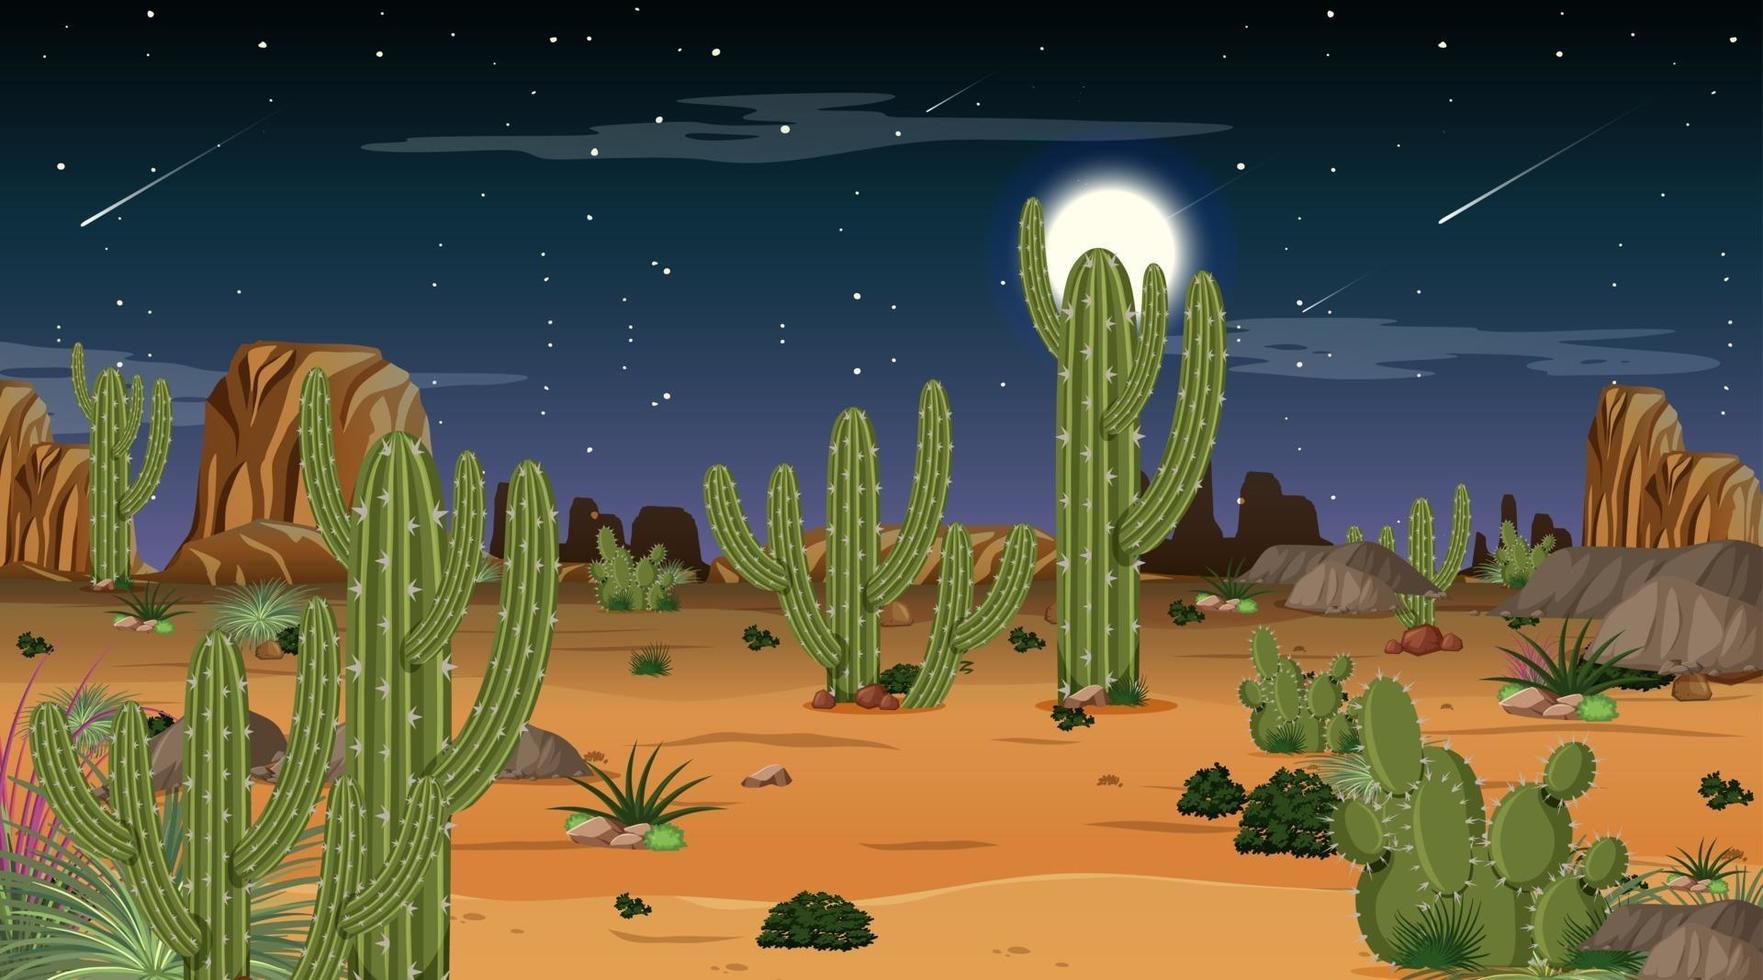 Desert forest landscape at night scene vector